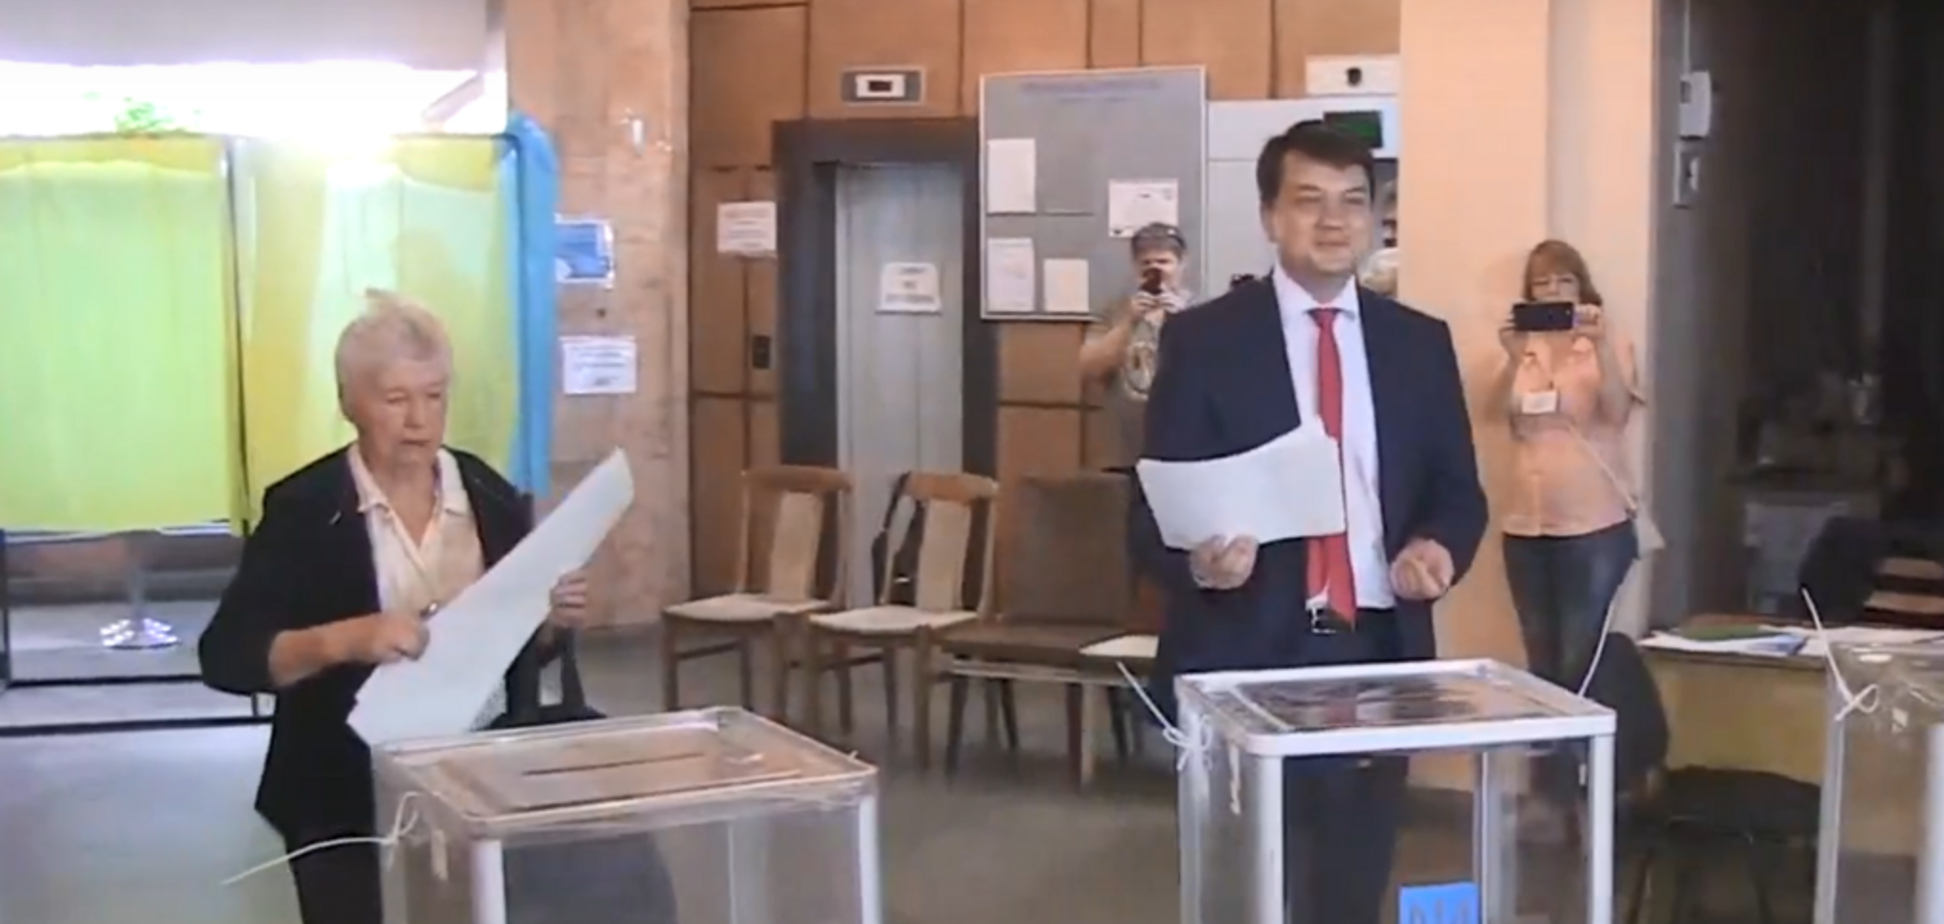 'Подыгрываете Путину!' Друг Зеленского угодил в скандал на избирательном участке. Видео